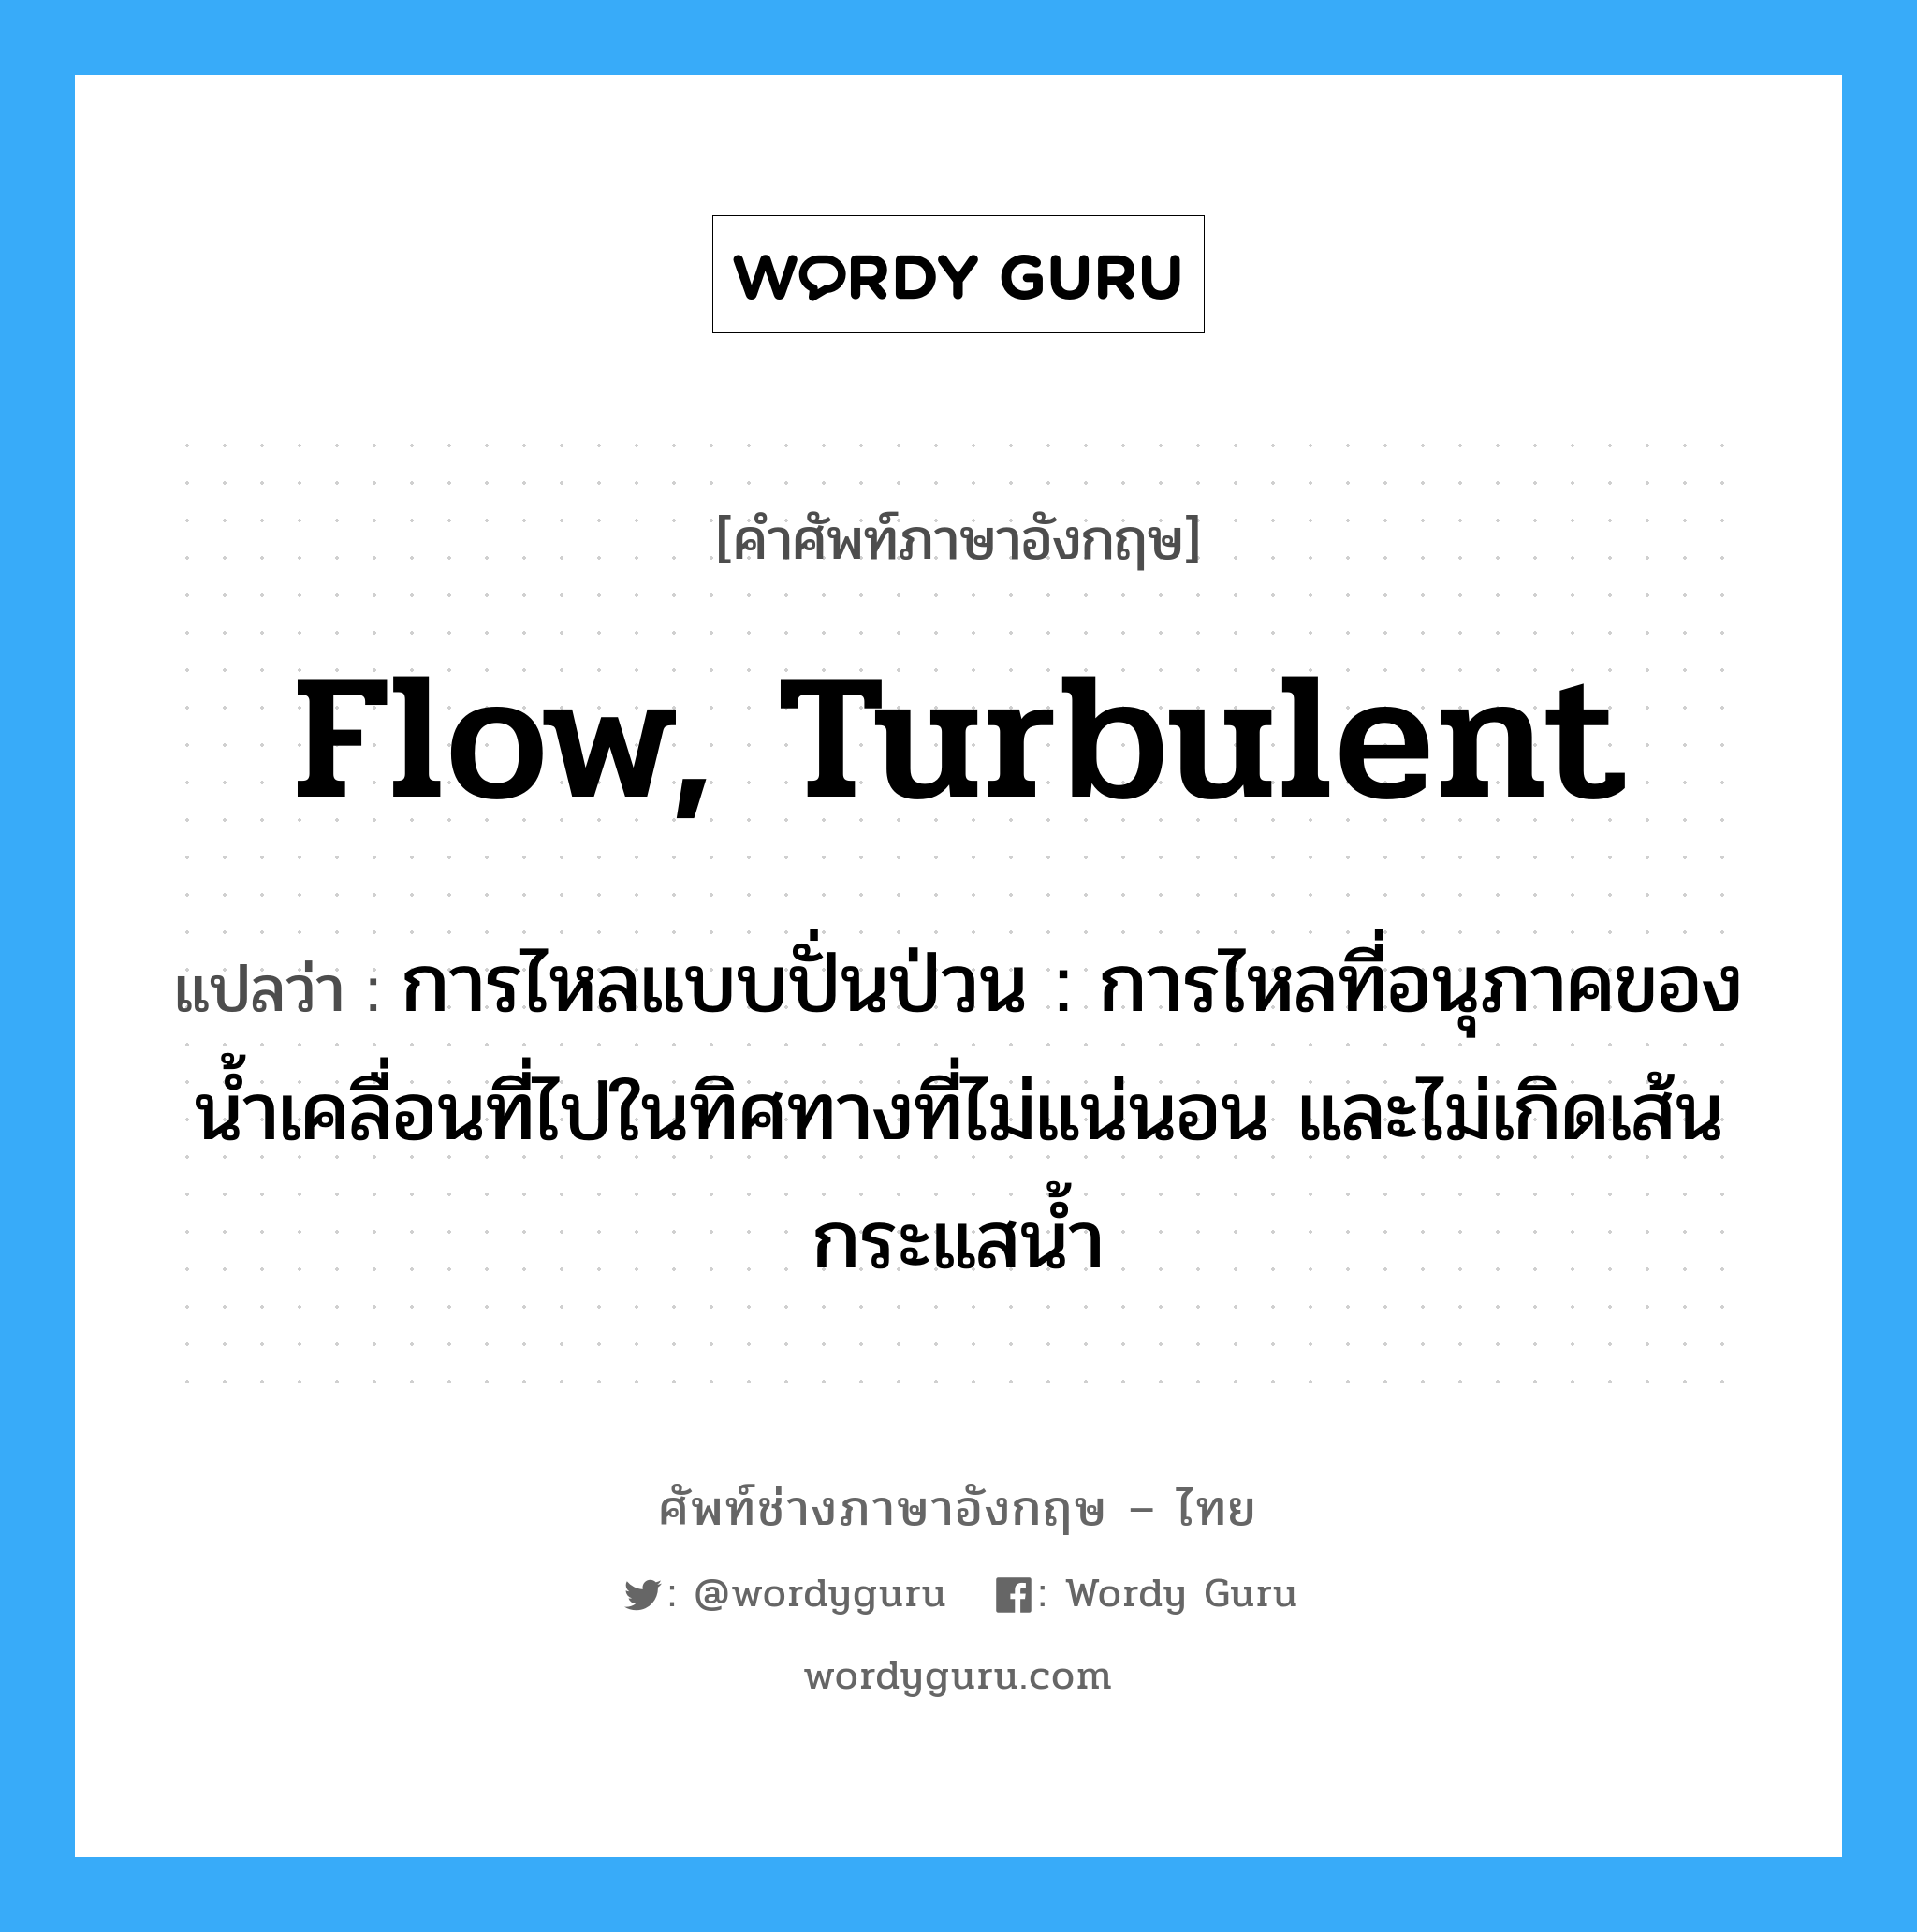 flow, turbulent แปลว่า?, คำศัพท์ช่างภาษาอังกฤษ - ไทย flow, turbulent คำศัพท์ภาษาอังกฤษ flow, turbulent แปลว่า การไหลแบบปั่นป่วน : การไหลที่อนุภาคของน้ำเคลื่อนที่ไปในทิศทางที่ไม่แน่นอน และไม่เกิดเส้นกระแสน้ำ